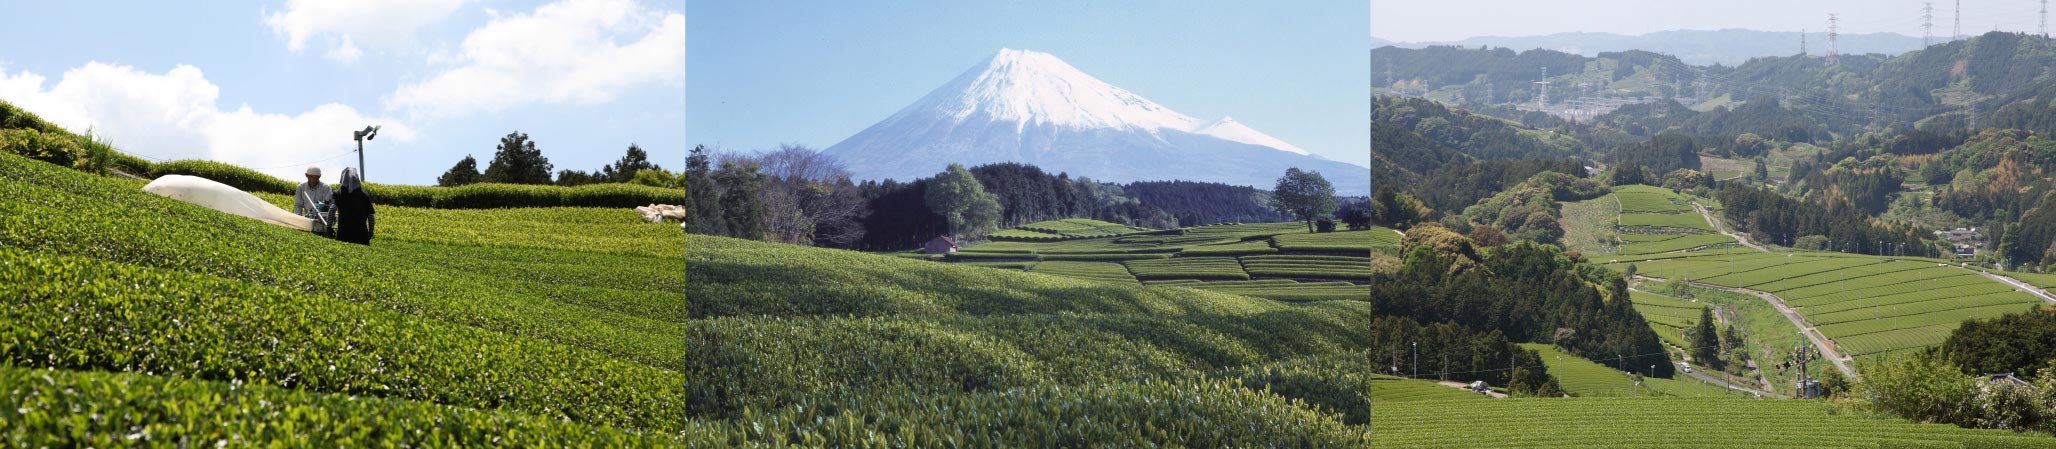 茶摘み風景と富士山と谷